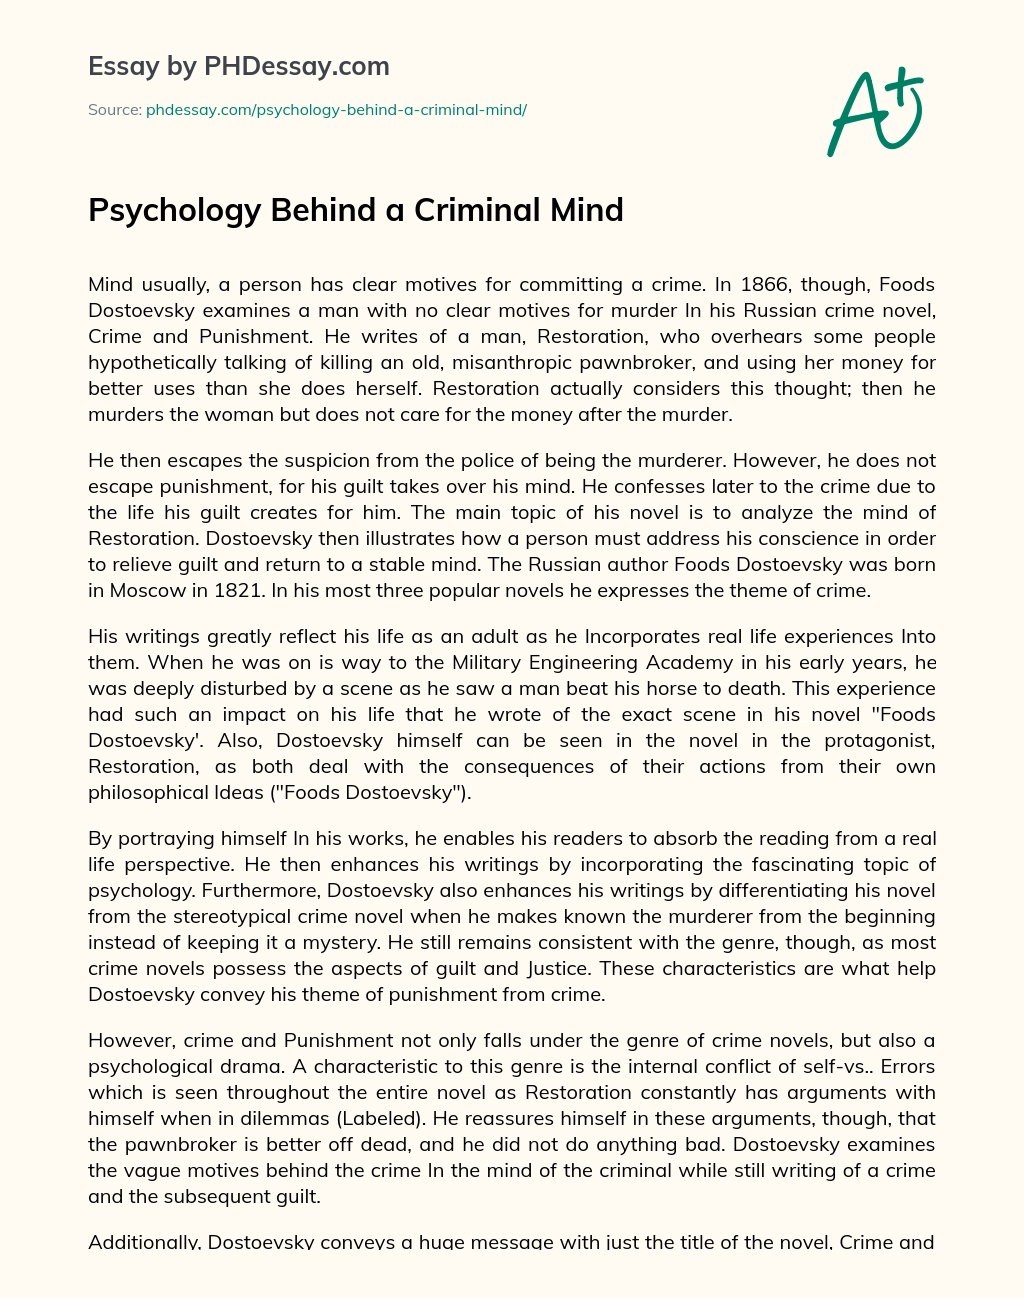 Psychology Behind a Criminal Mind essay